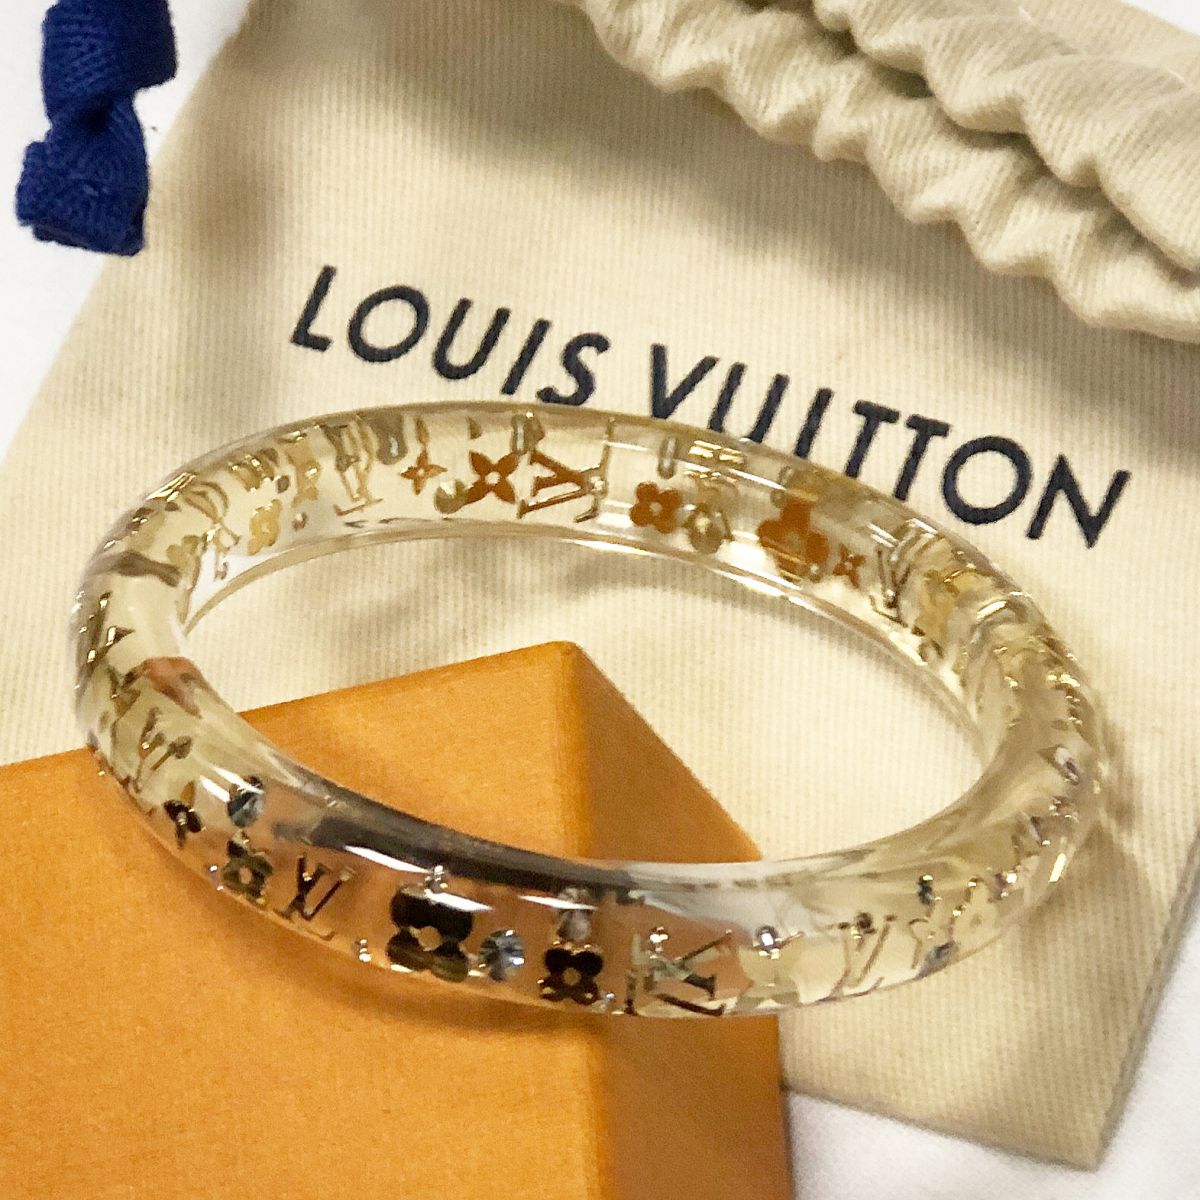 Украшения  Браслет Louis Vuitton Crazy In Lock luxe quality в бренд  коробка 51381 купить в интернетмагазине